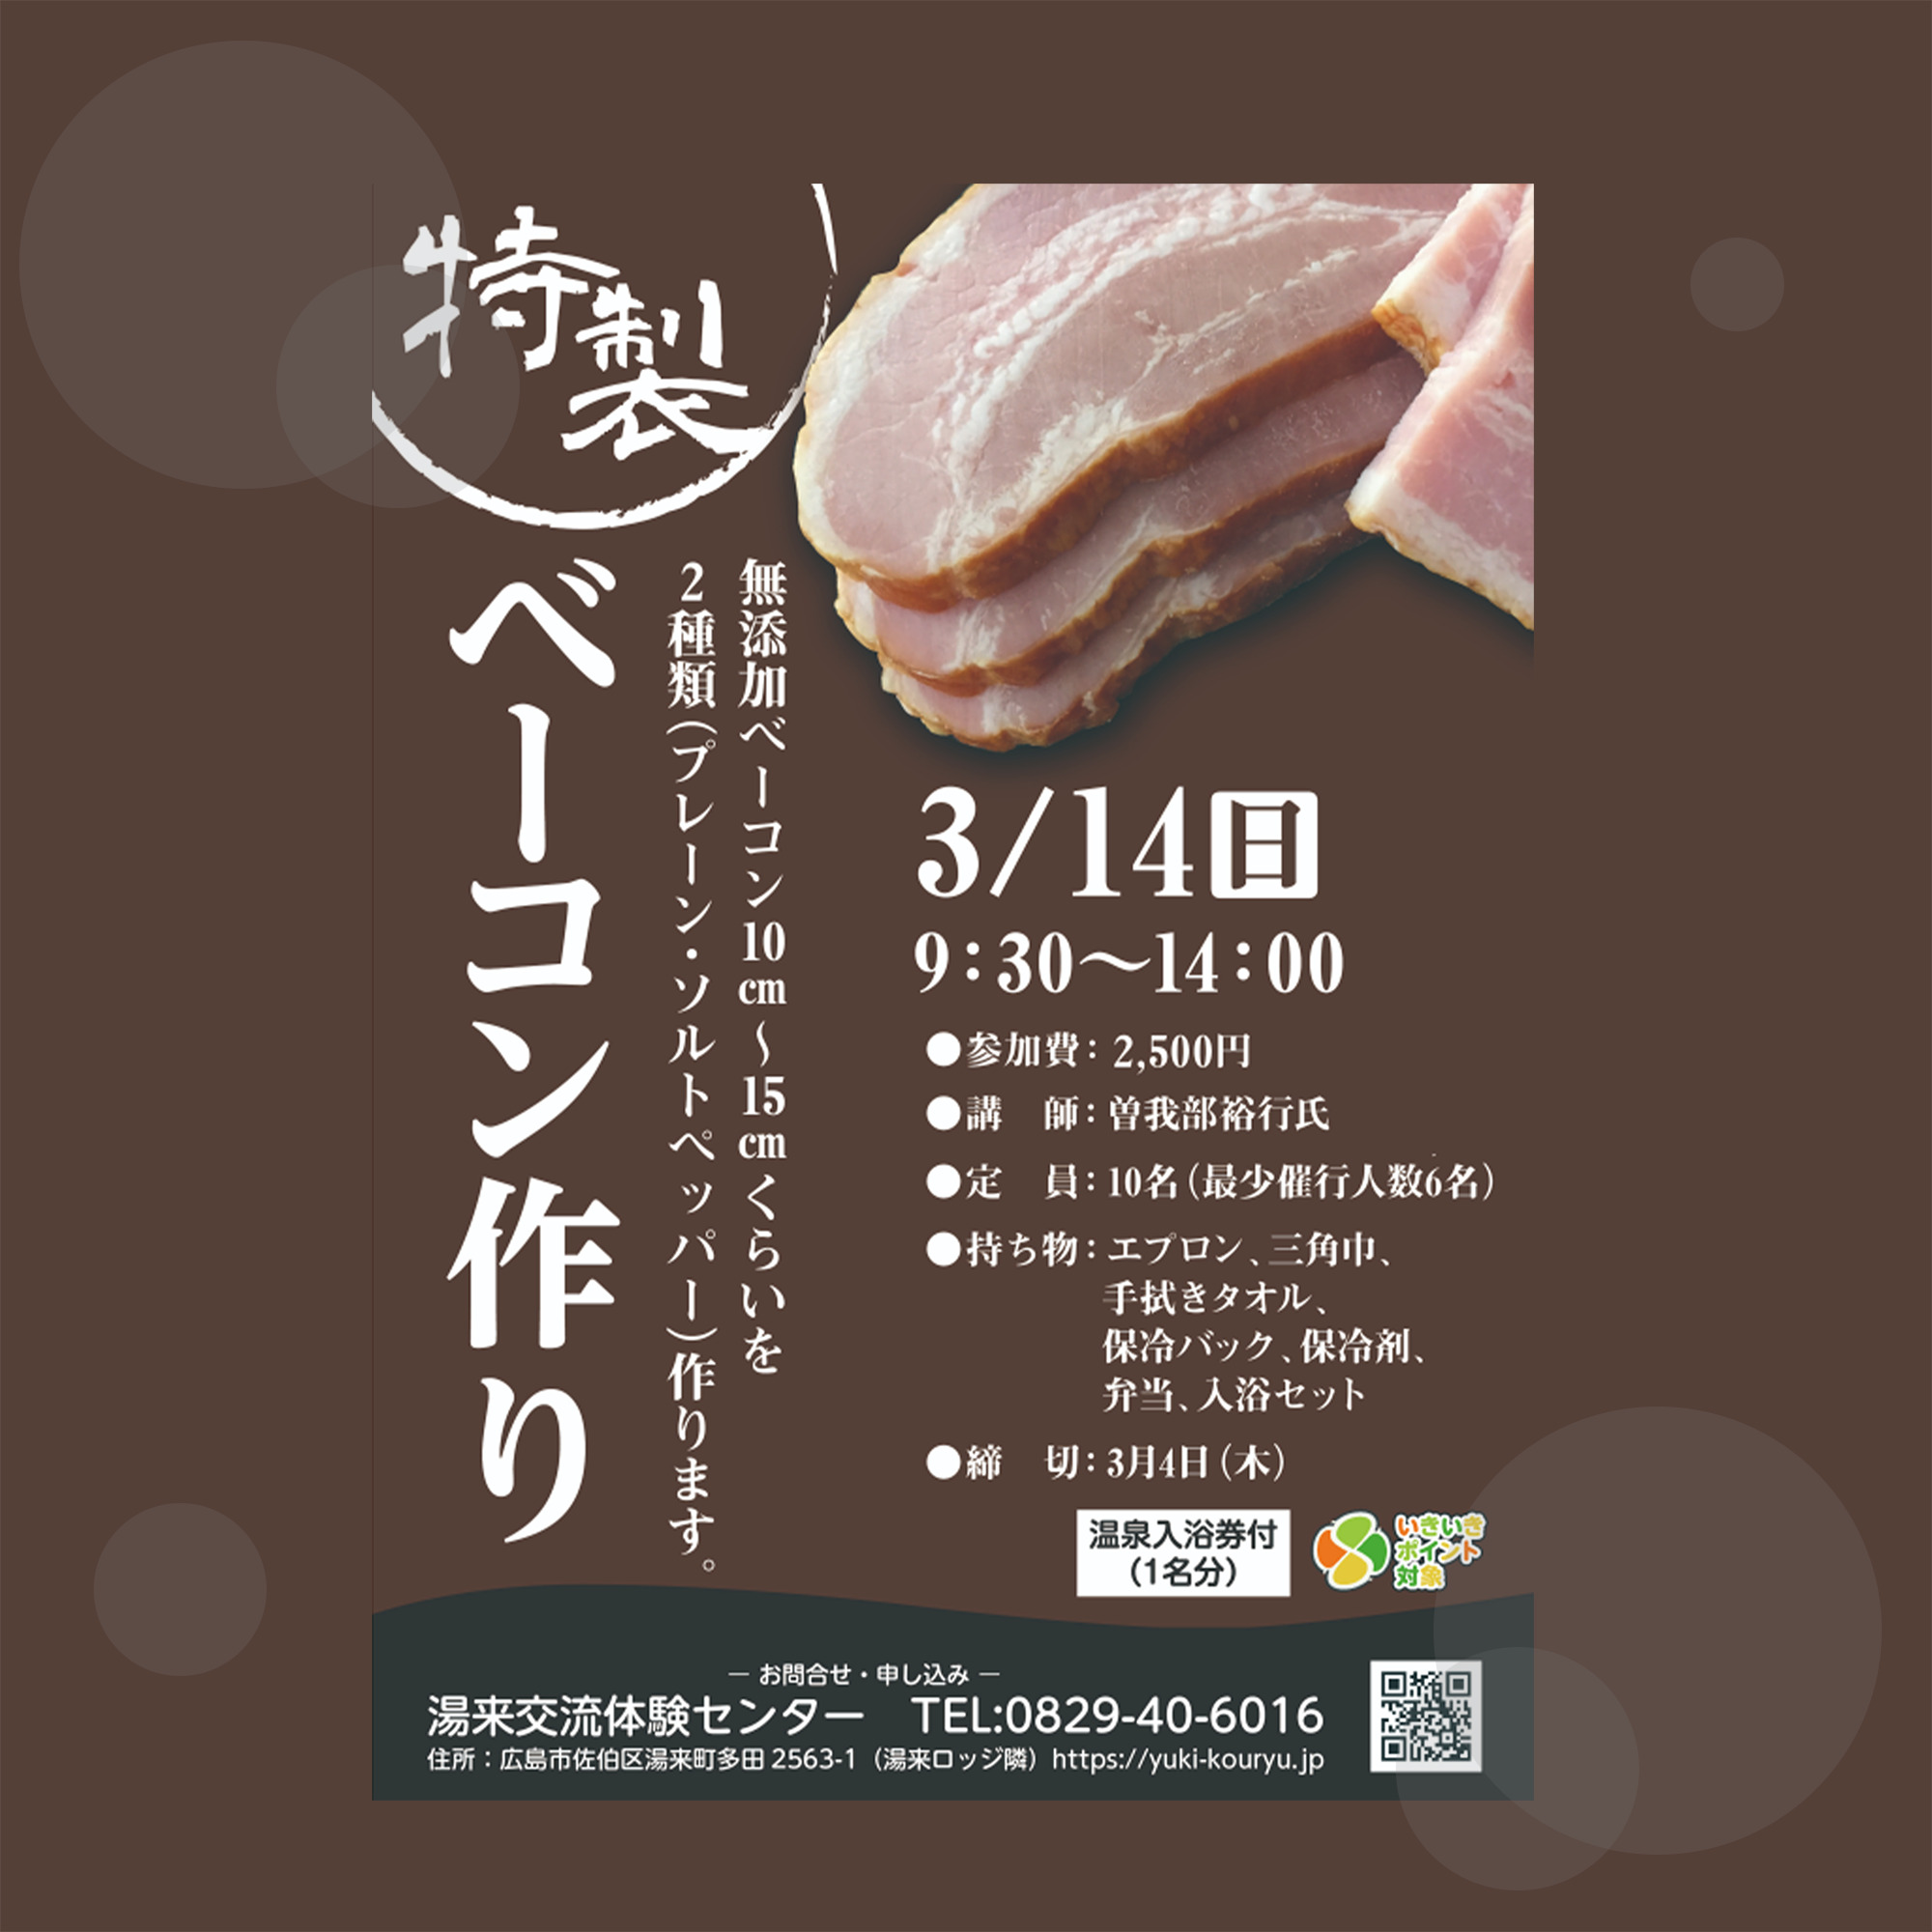 3月14日 日 は超本格 特製ベーコン作り 広島で自然体験 広島市湯来交流体験センター